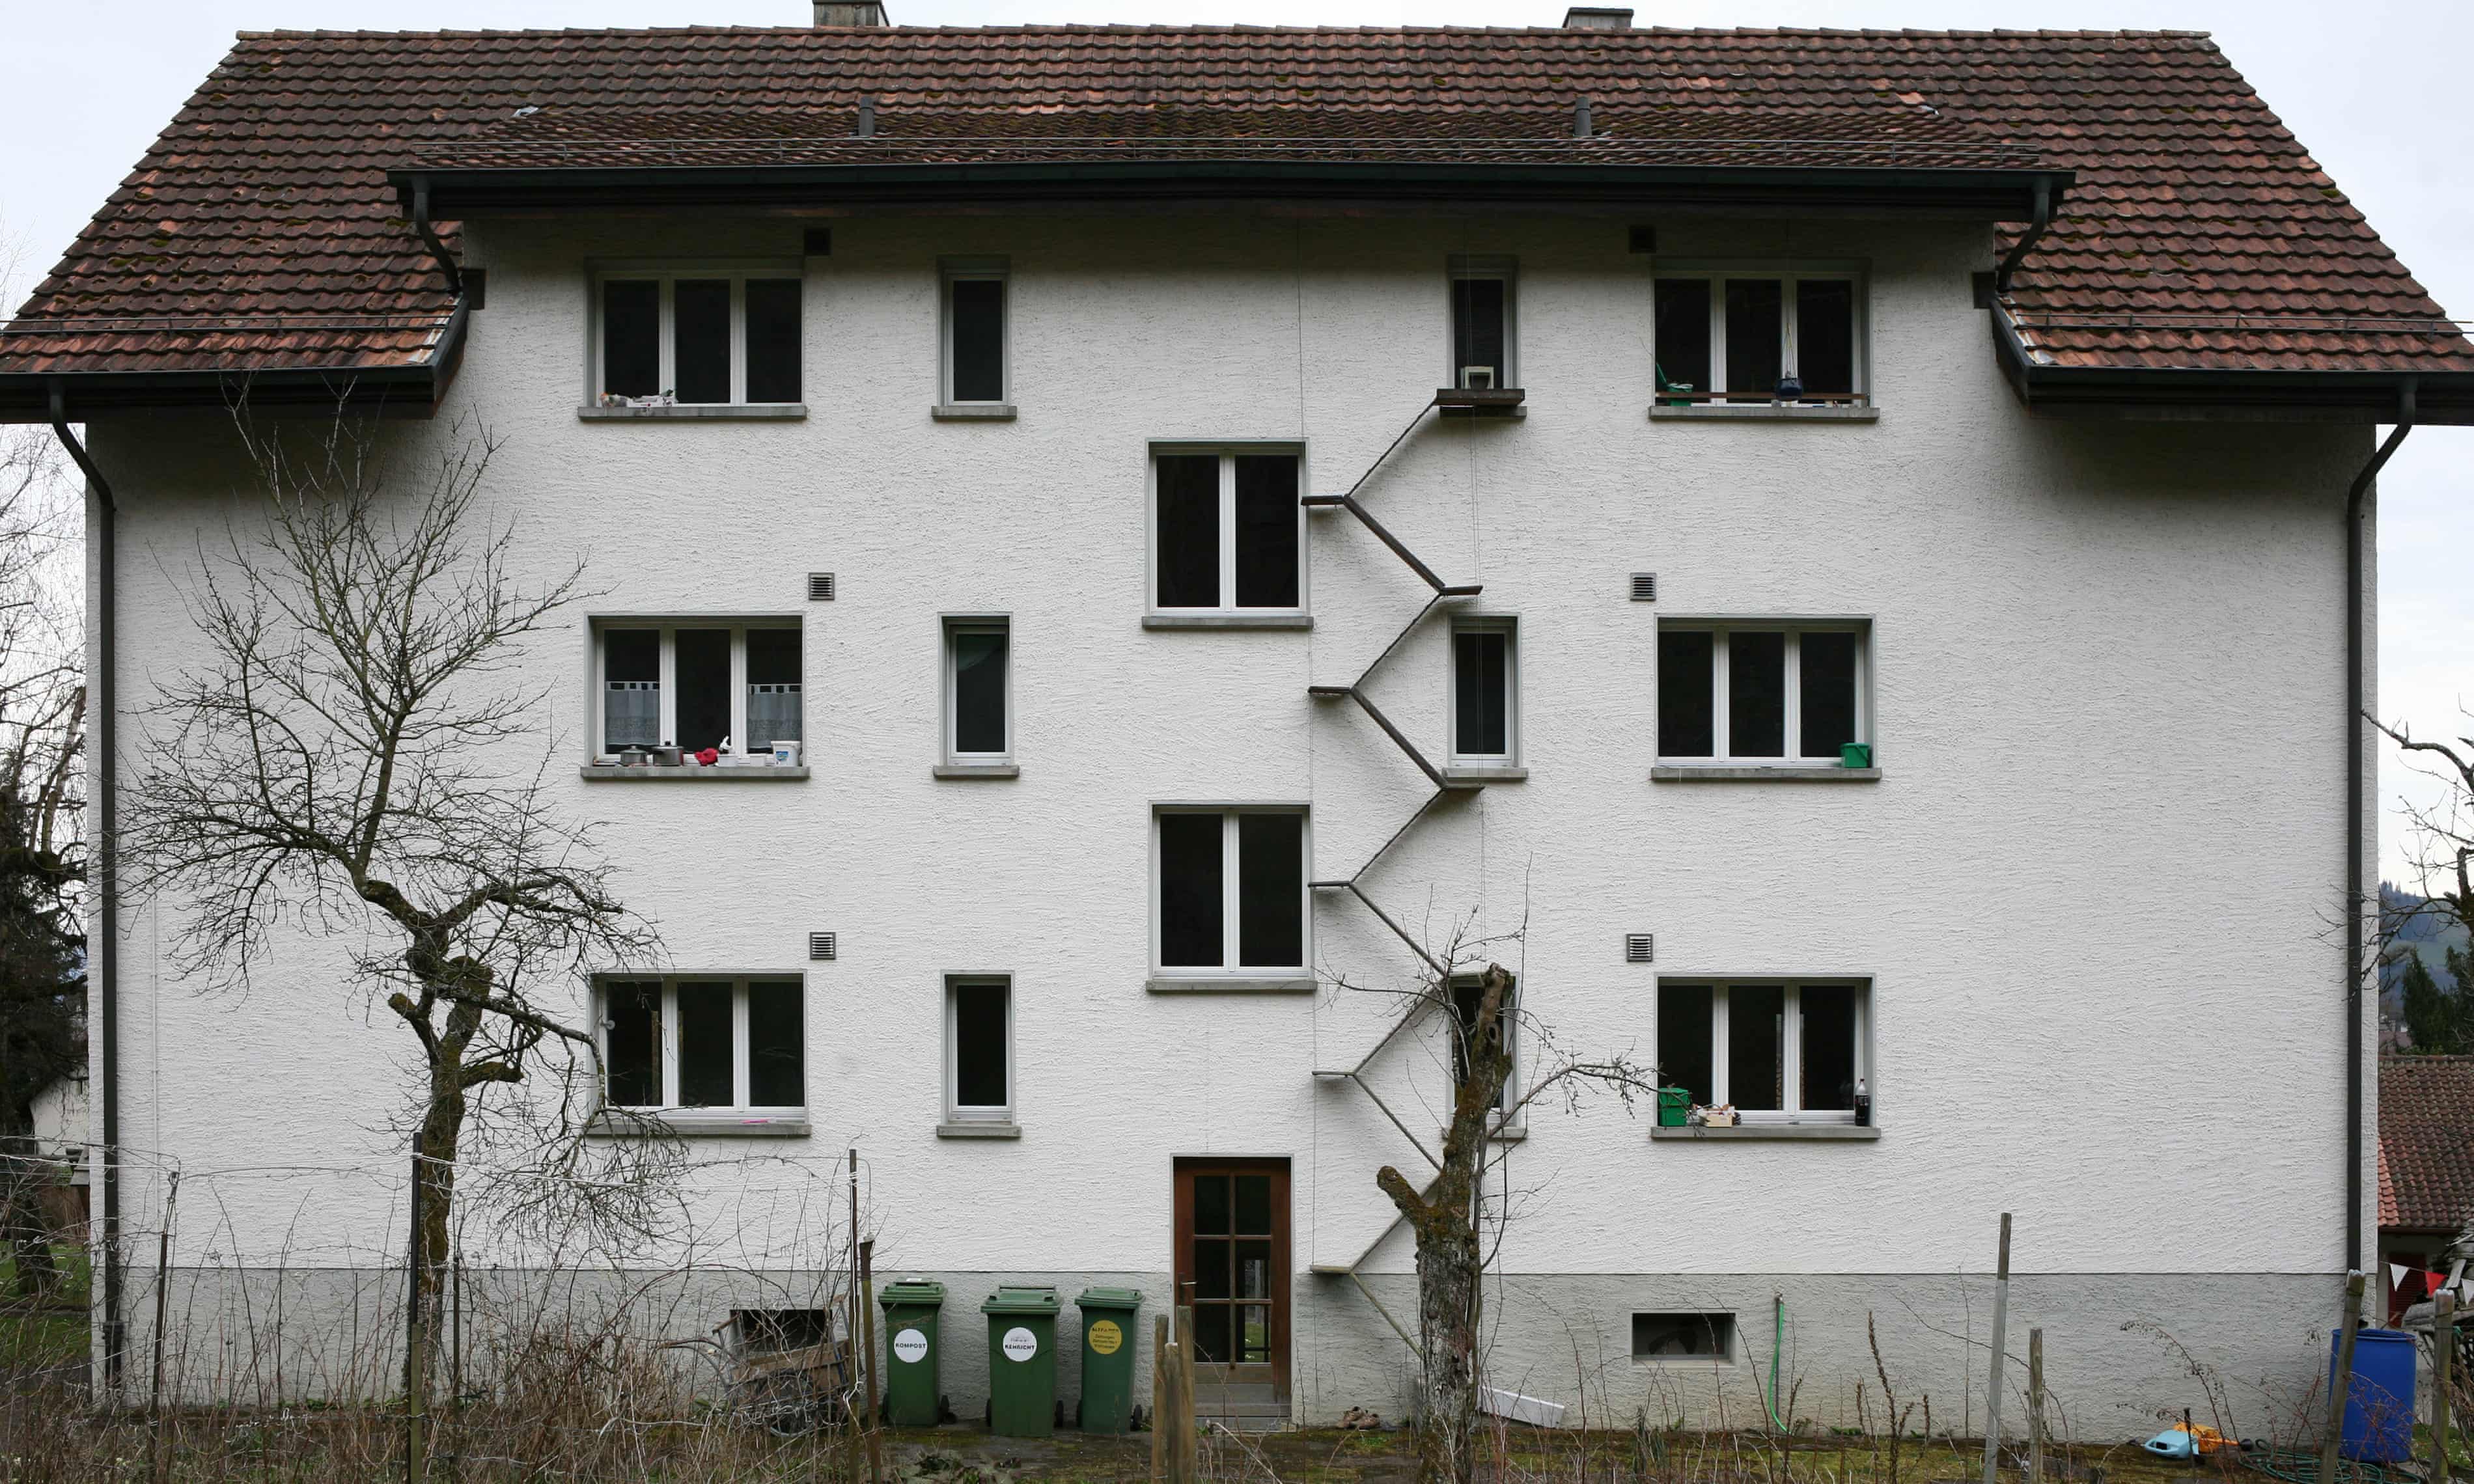 Des Escaliers Sur Les Façades Des Bâtiments En Suisse Pour